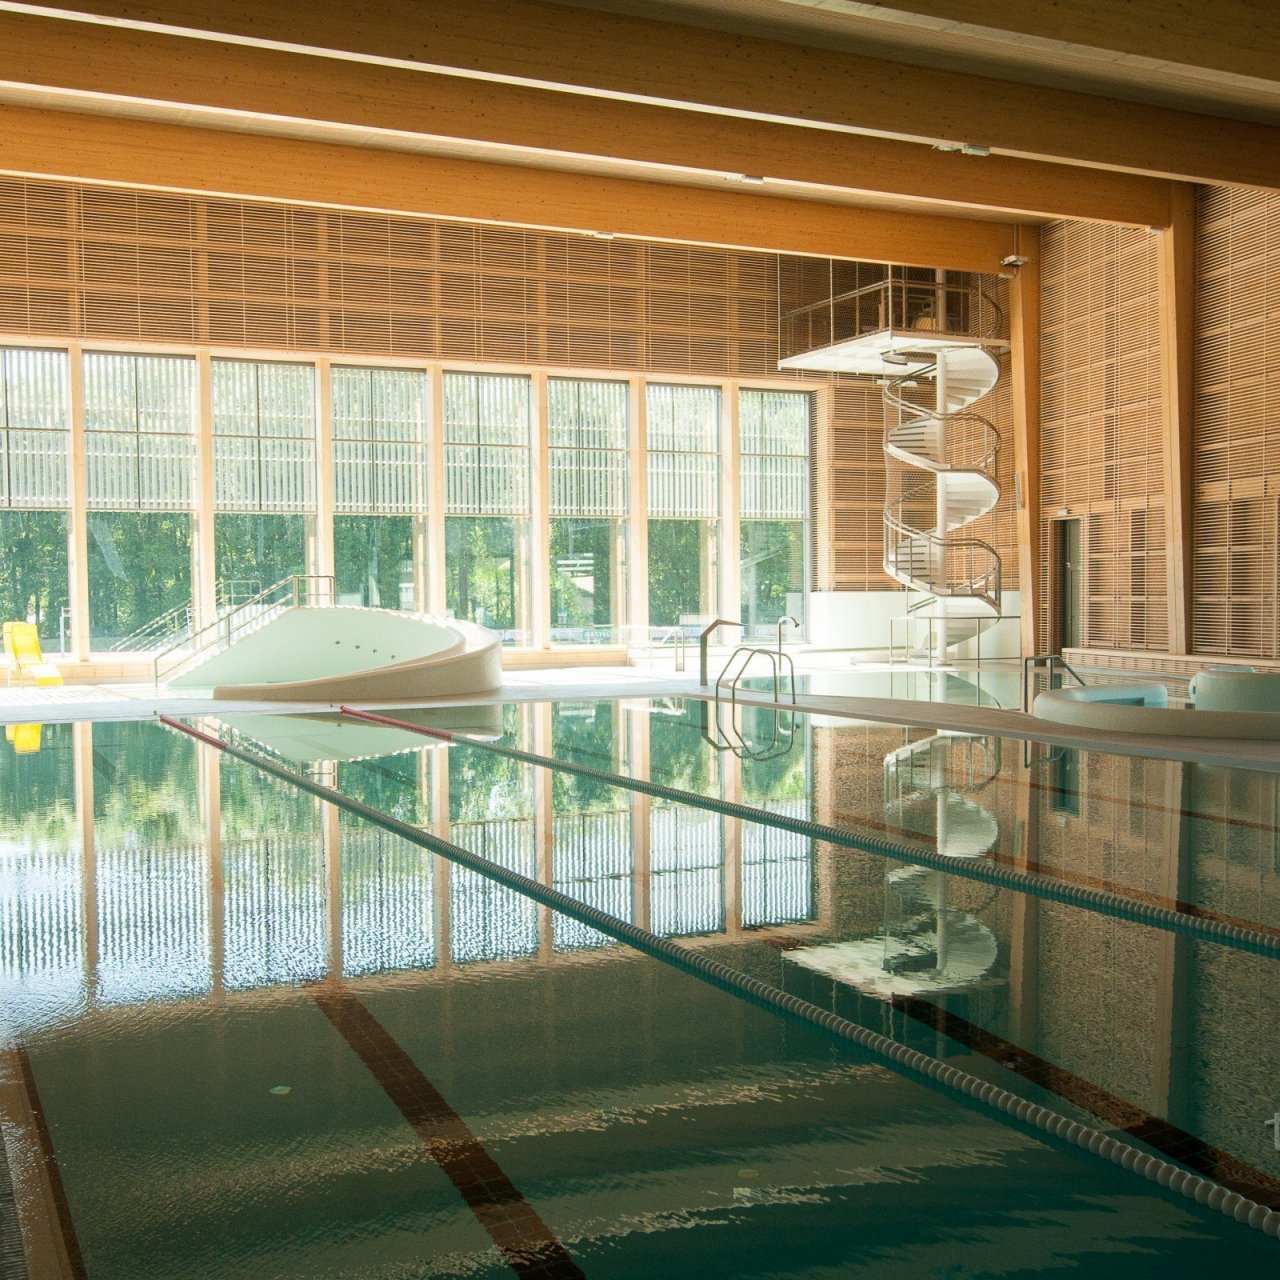 Přijeďte si zaplavat, zacvičit či relaxovat v sauně a vířivkách!